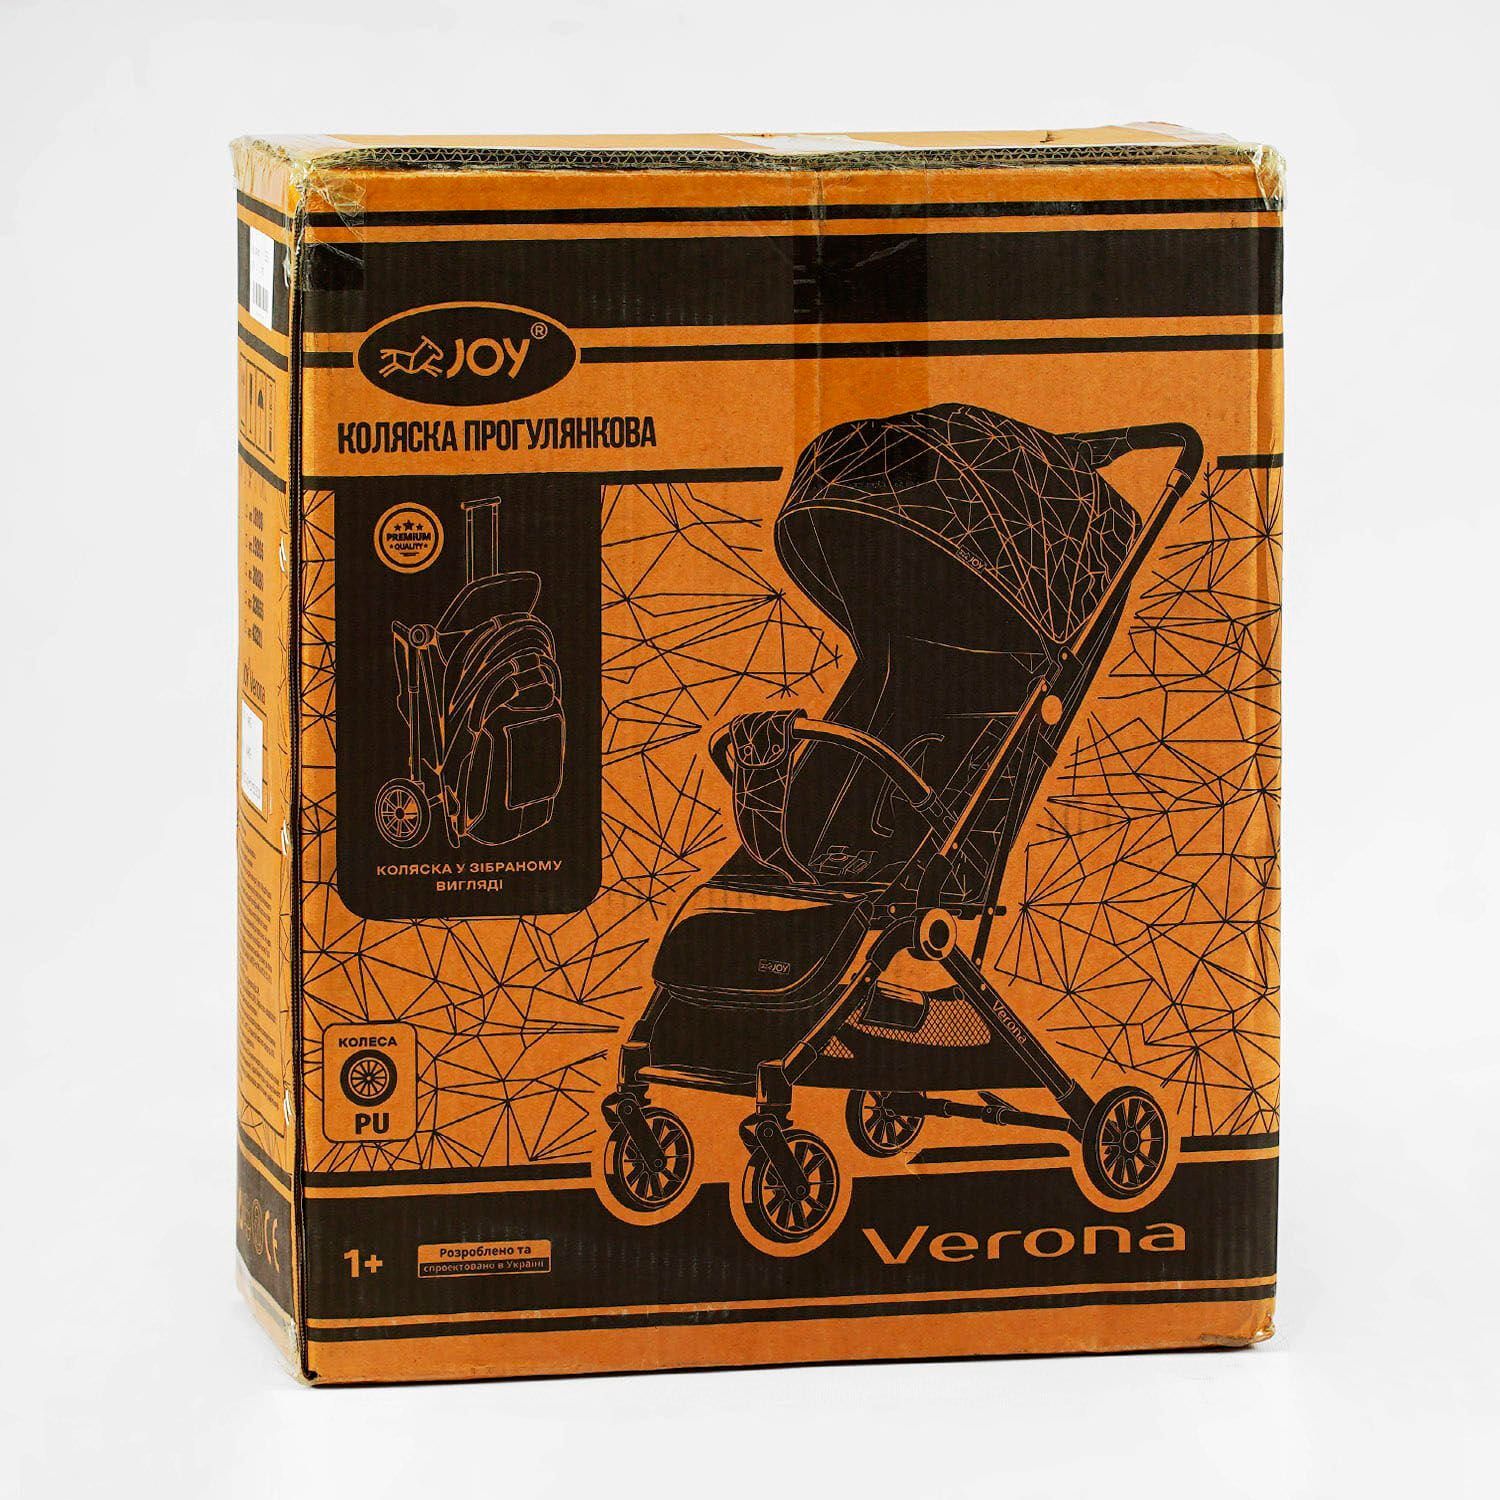 Візок прогулянковий дитячий "JOY" Verona (43211) рама сталева, футкавер, підсклянник, телескопічна ручка